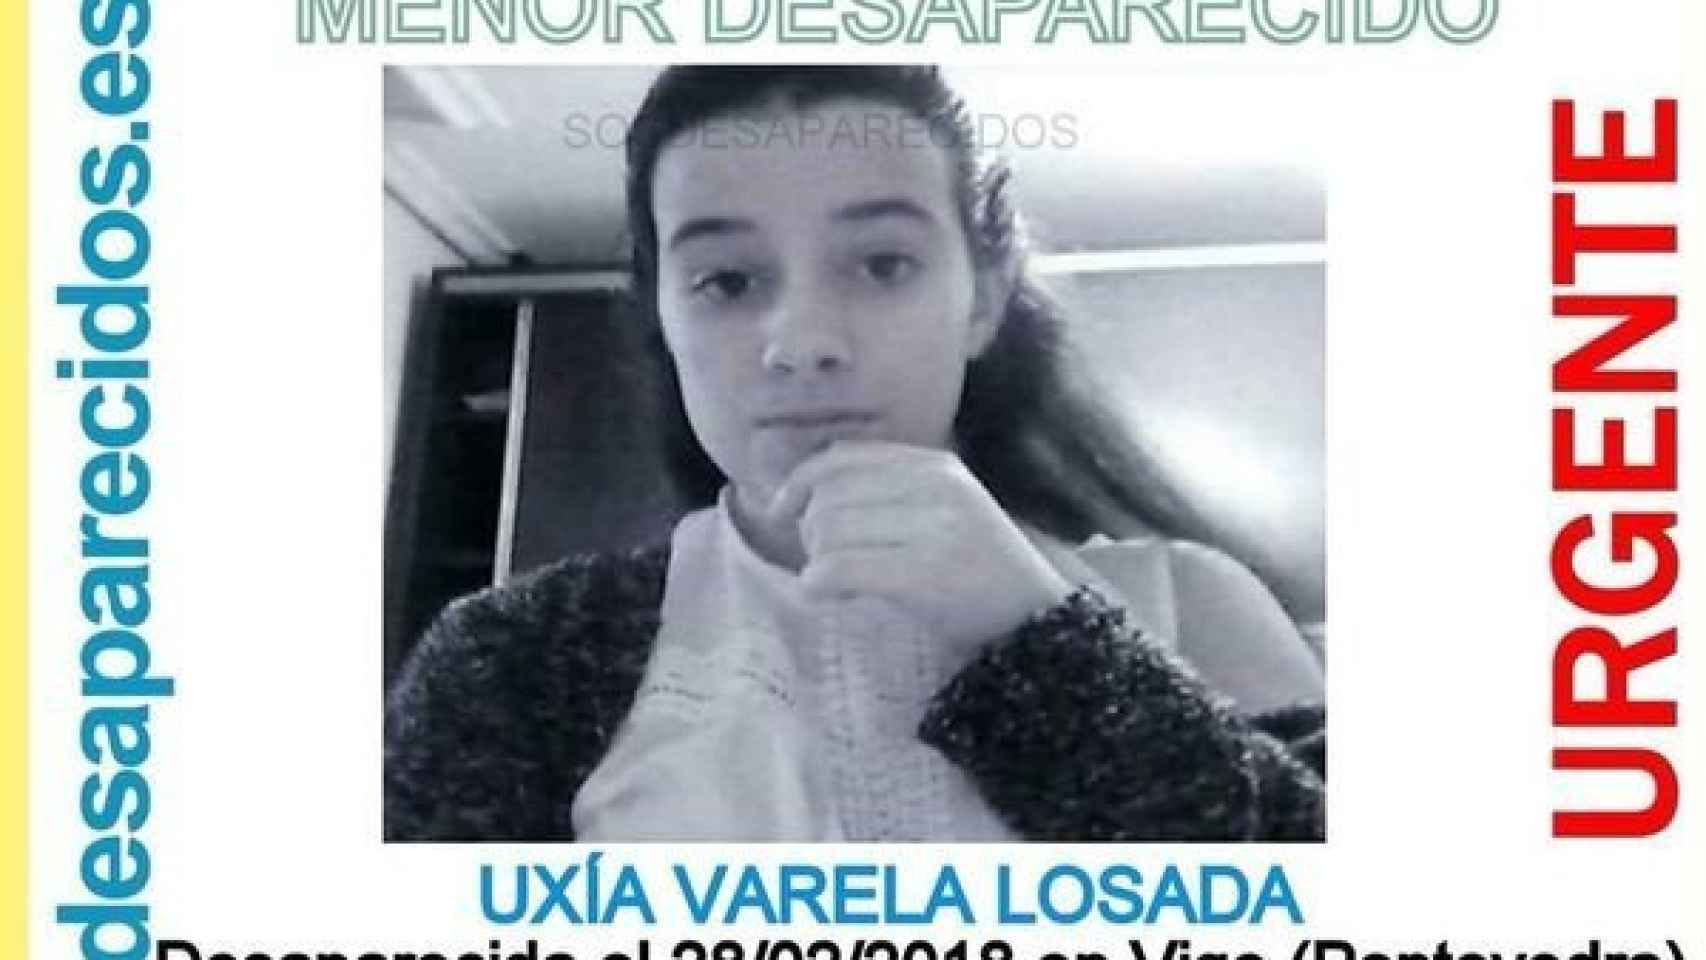 Imagen de la joven difundida por SOS Desaparecidos.